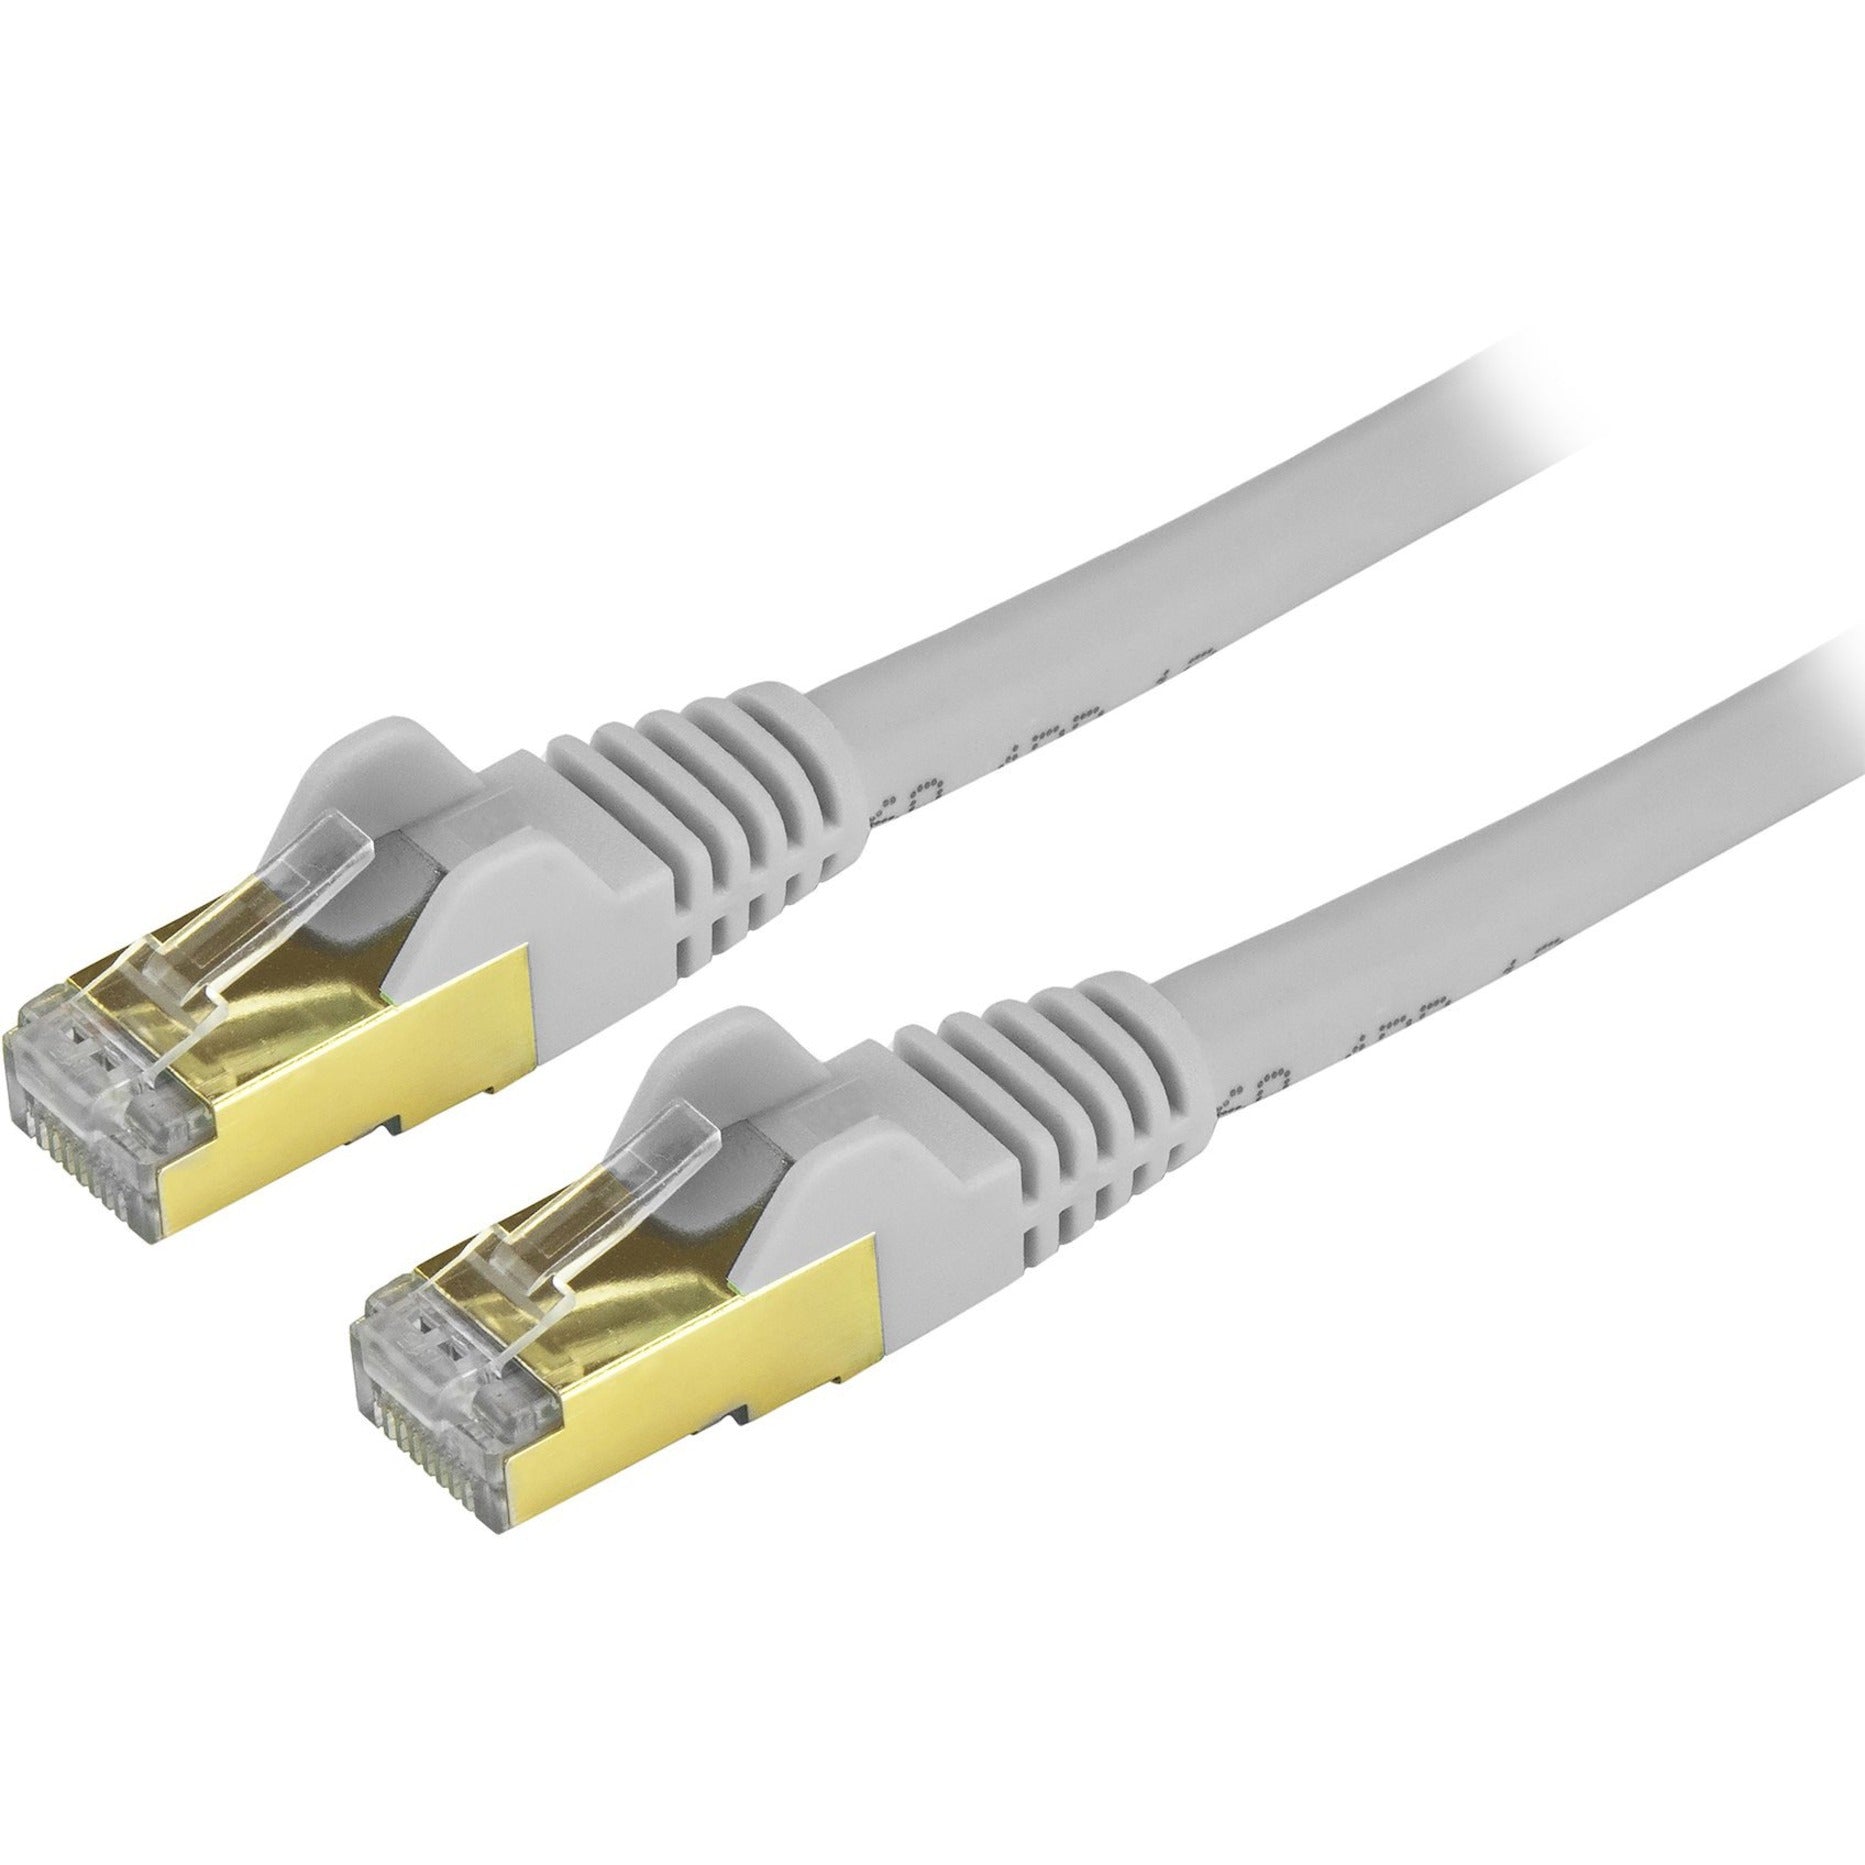 StarTech.com C6ASPAT20GR Cable de conexión Ethernet Cat6a - Apantallado (STP) - 20 pies. Gris RJ45 sin enganches - Cable Ethernet largo.